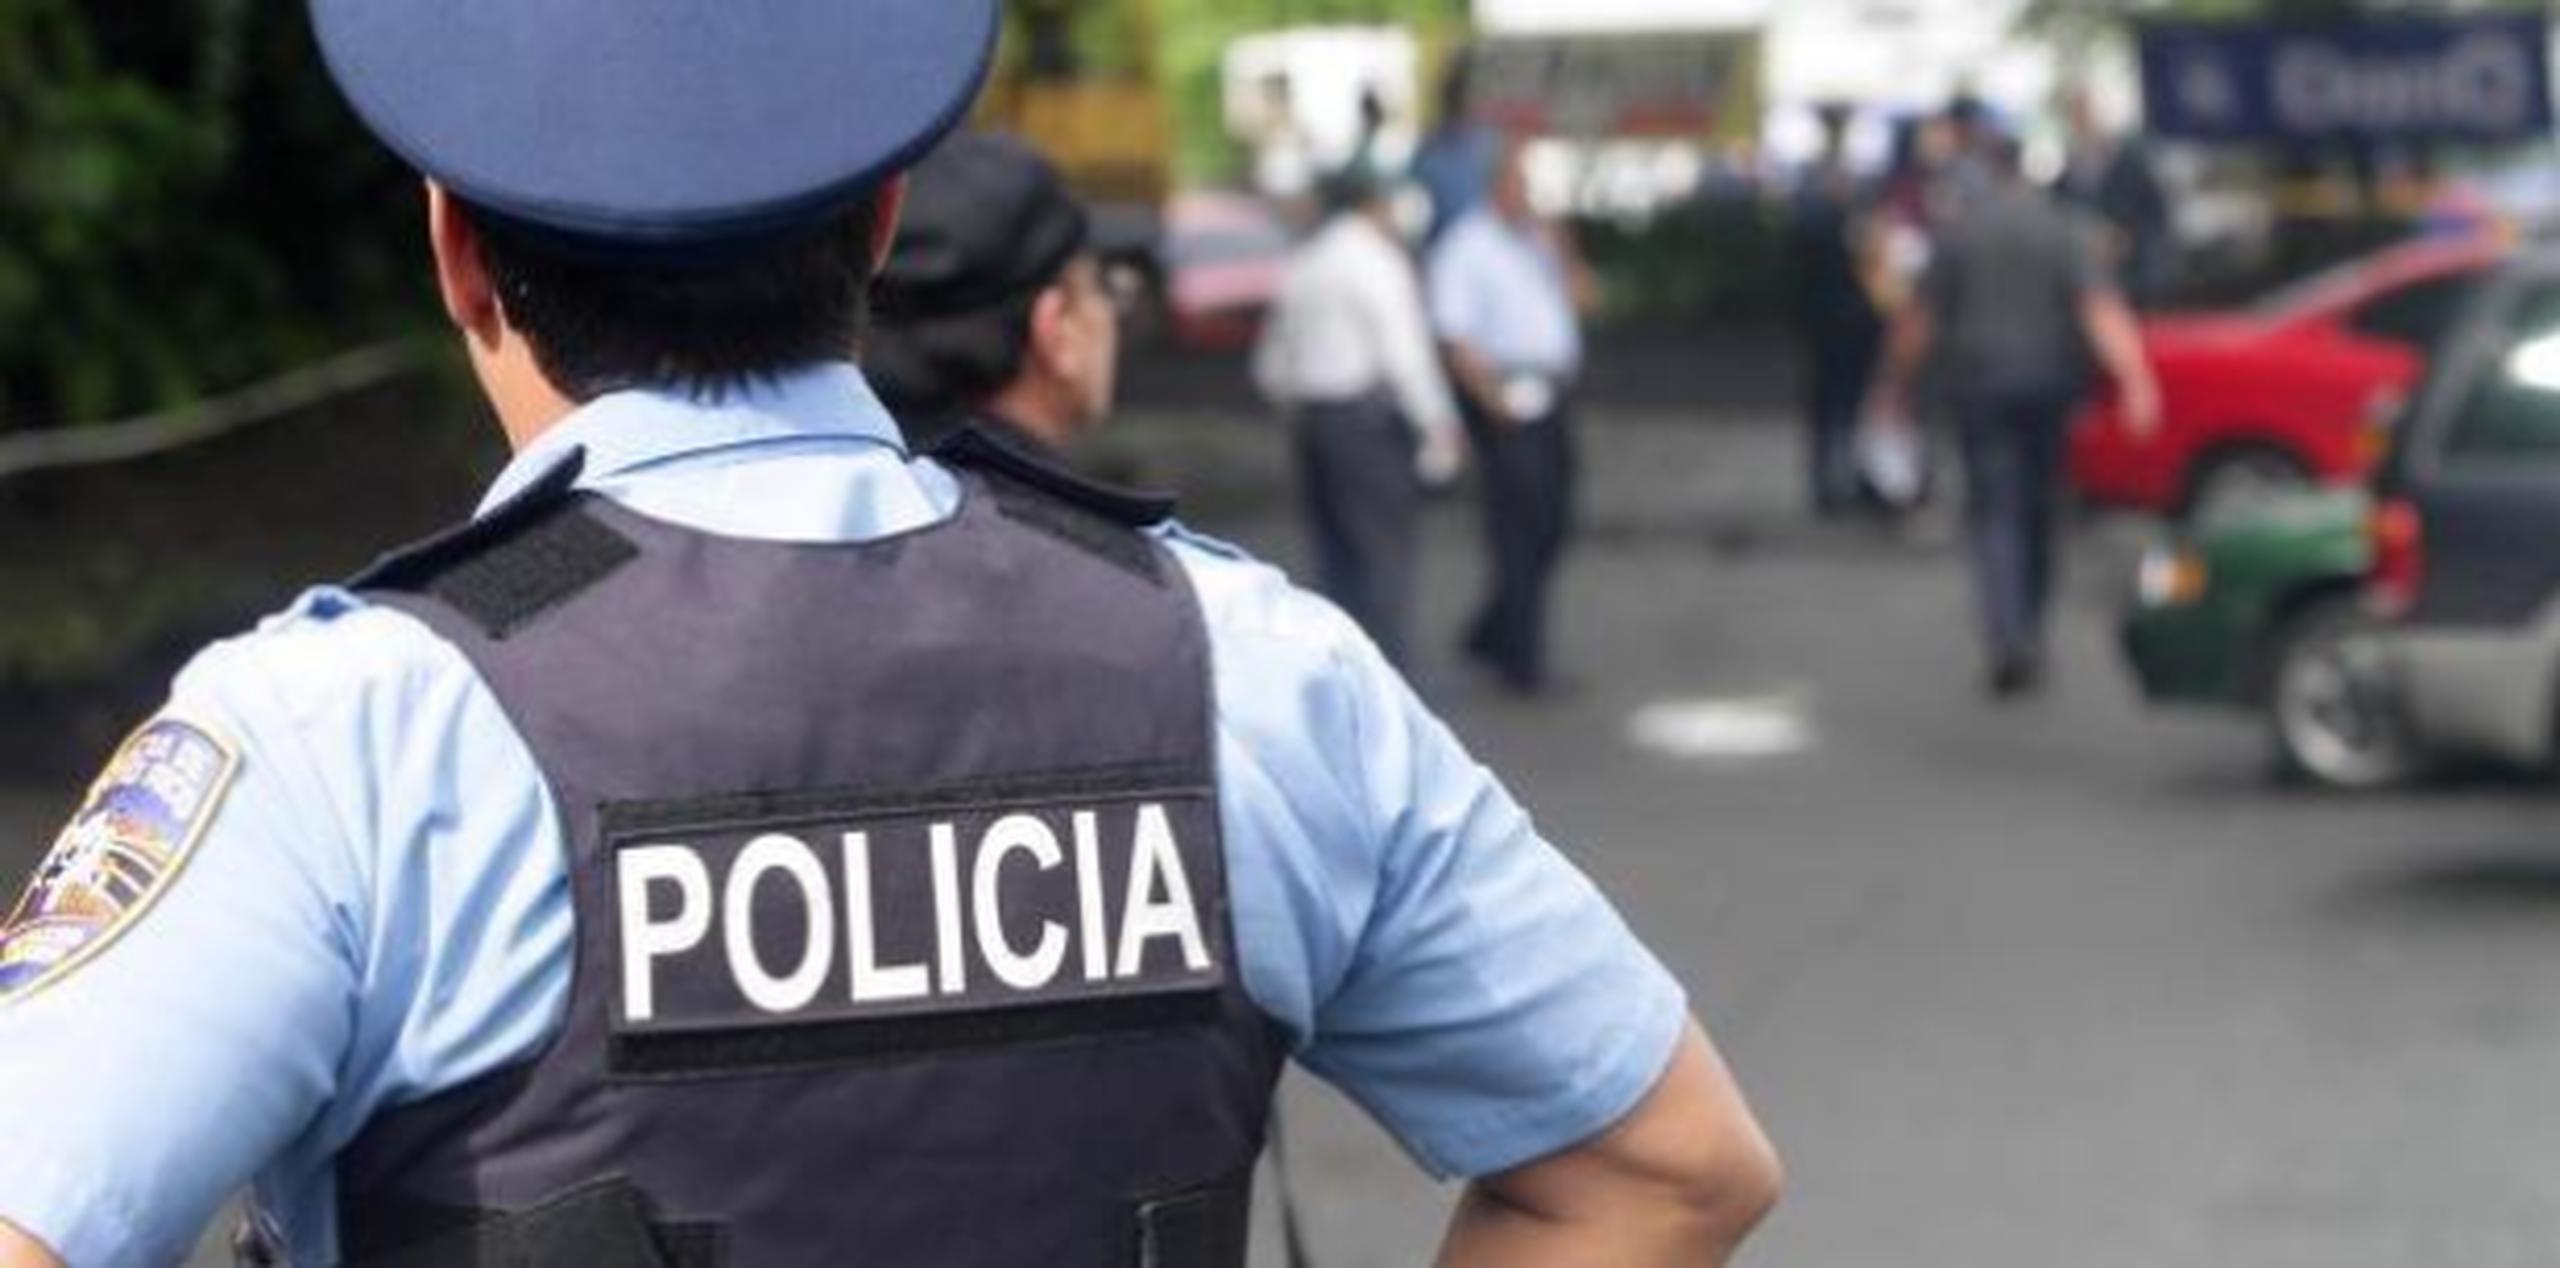 Cooperación ciudadana permite que adelante pesquisa de brutal balacera en Villas de Loíza  (Archivo)
